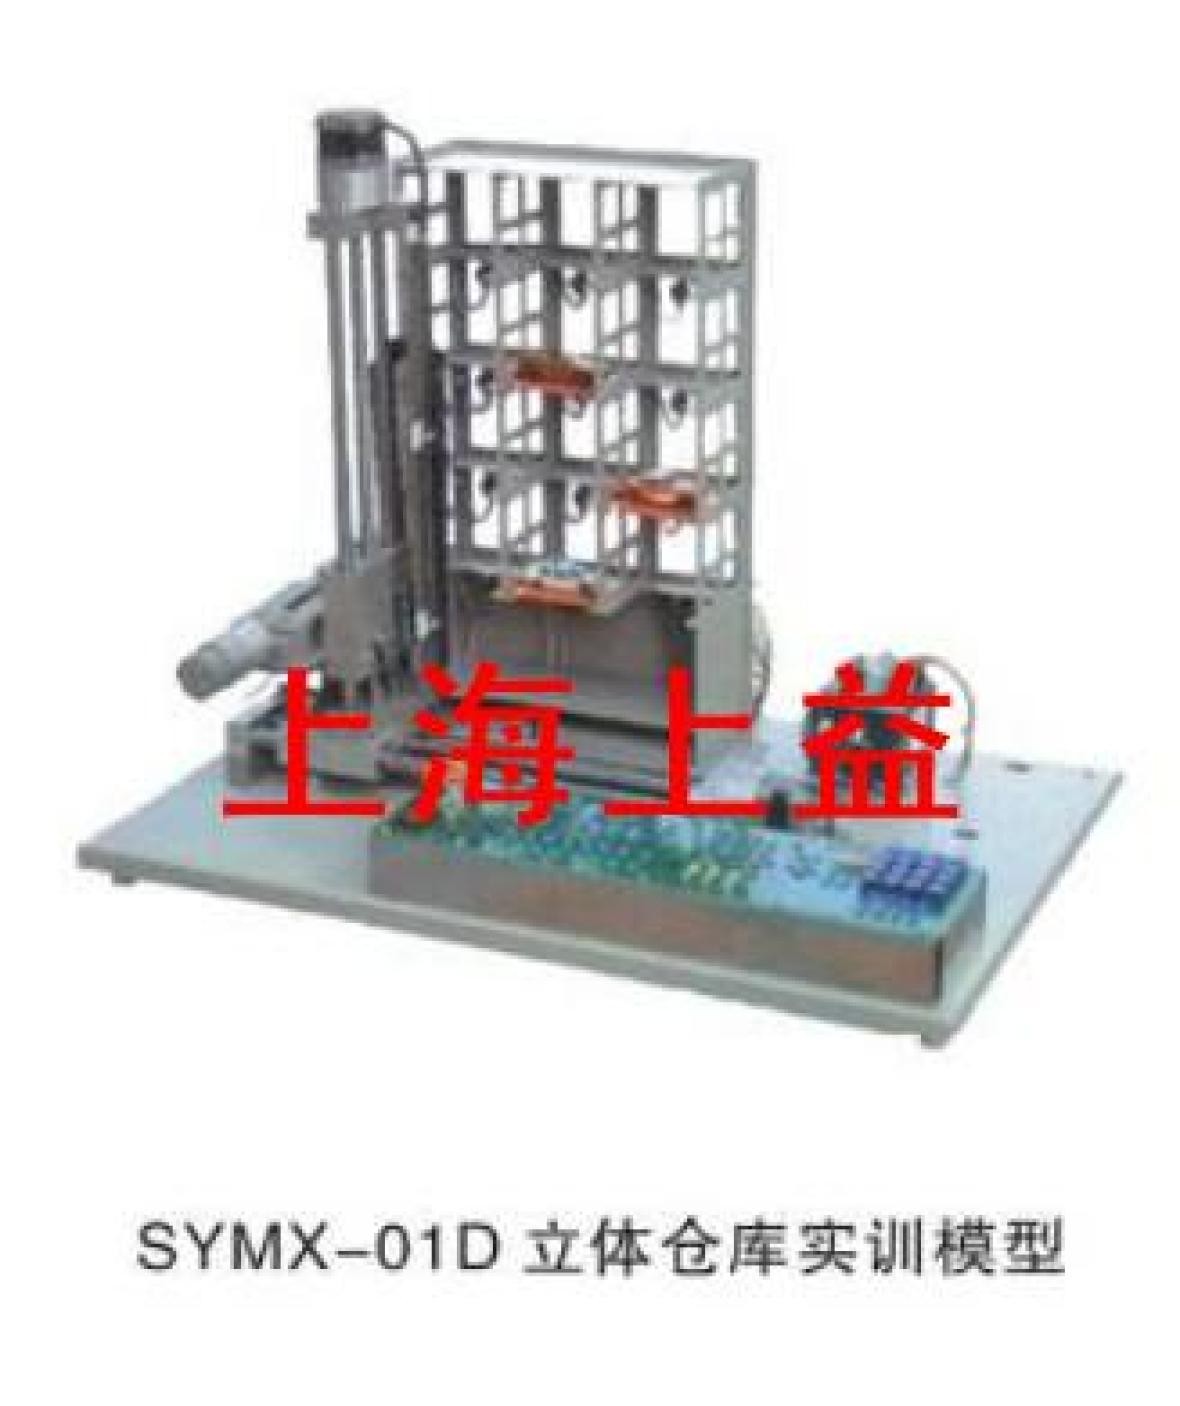 SYMX-01Z立體停車庫實物教學實驗裝置